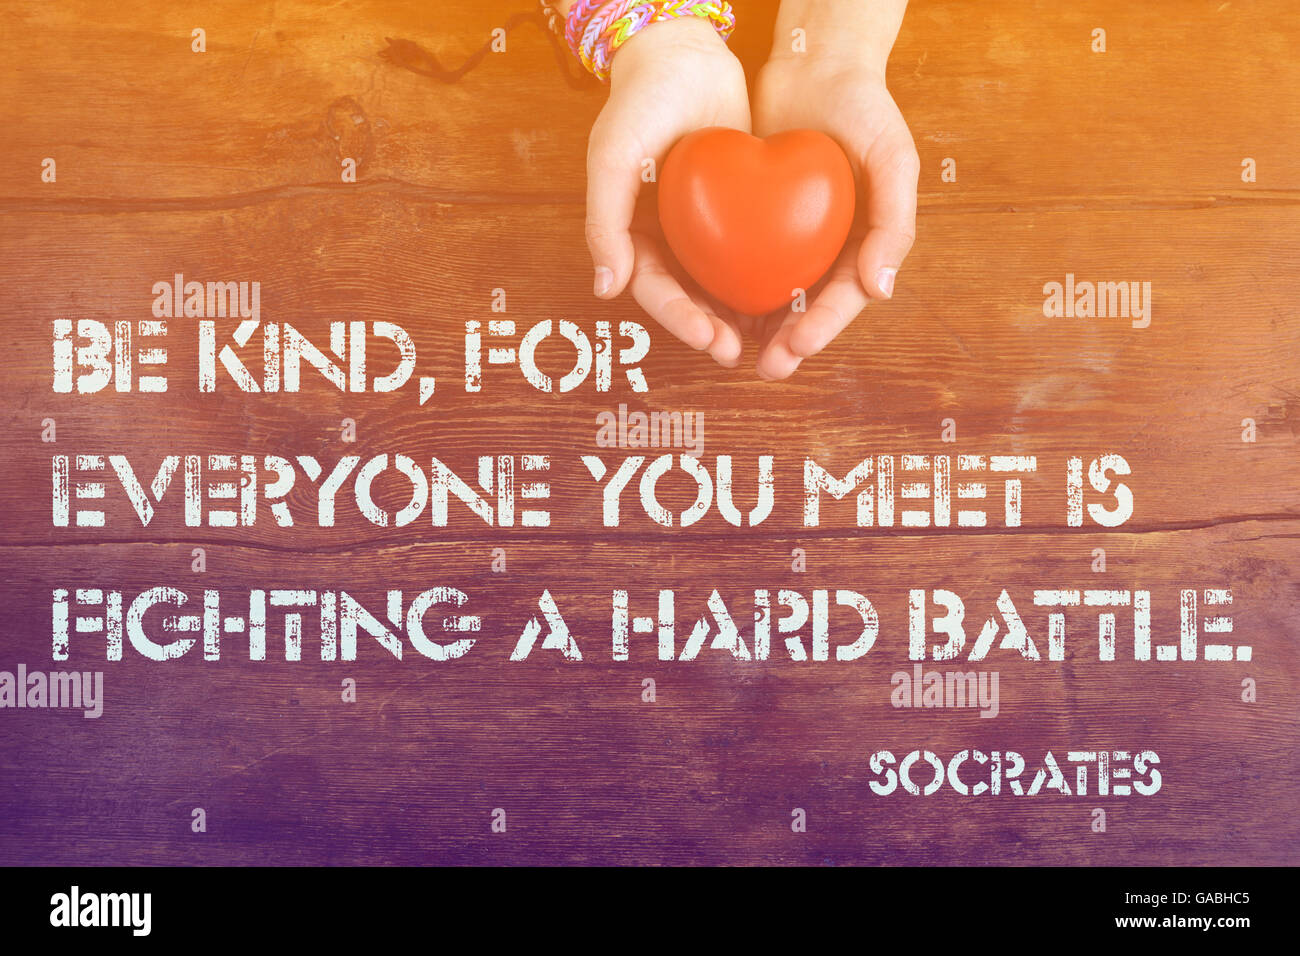 Freundlich sein, für alle, denen ihr begegnet, der griechische Philosoph Sokrates Zitat auf Bild der Hände mit Herz gedruckt- Stockfoto